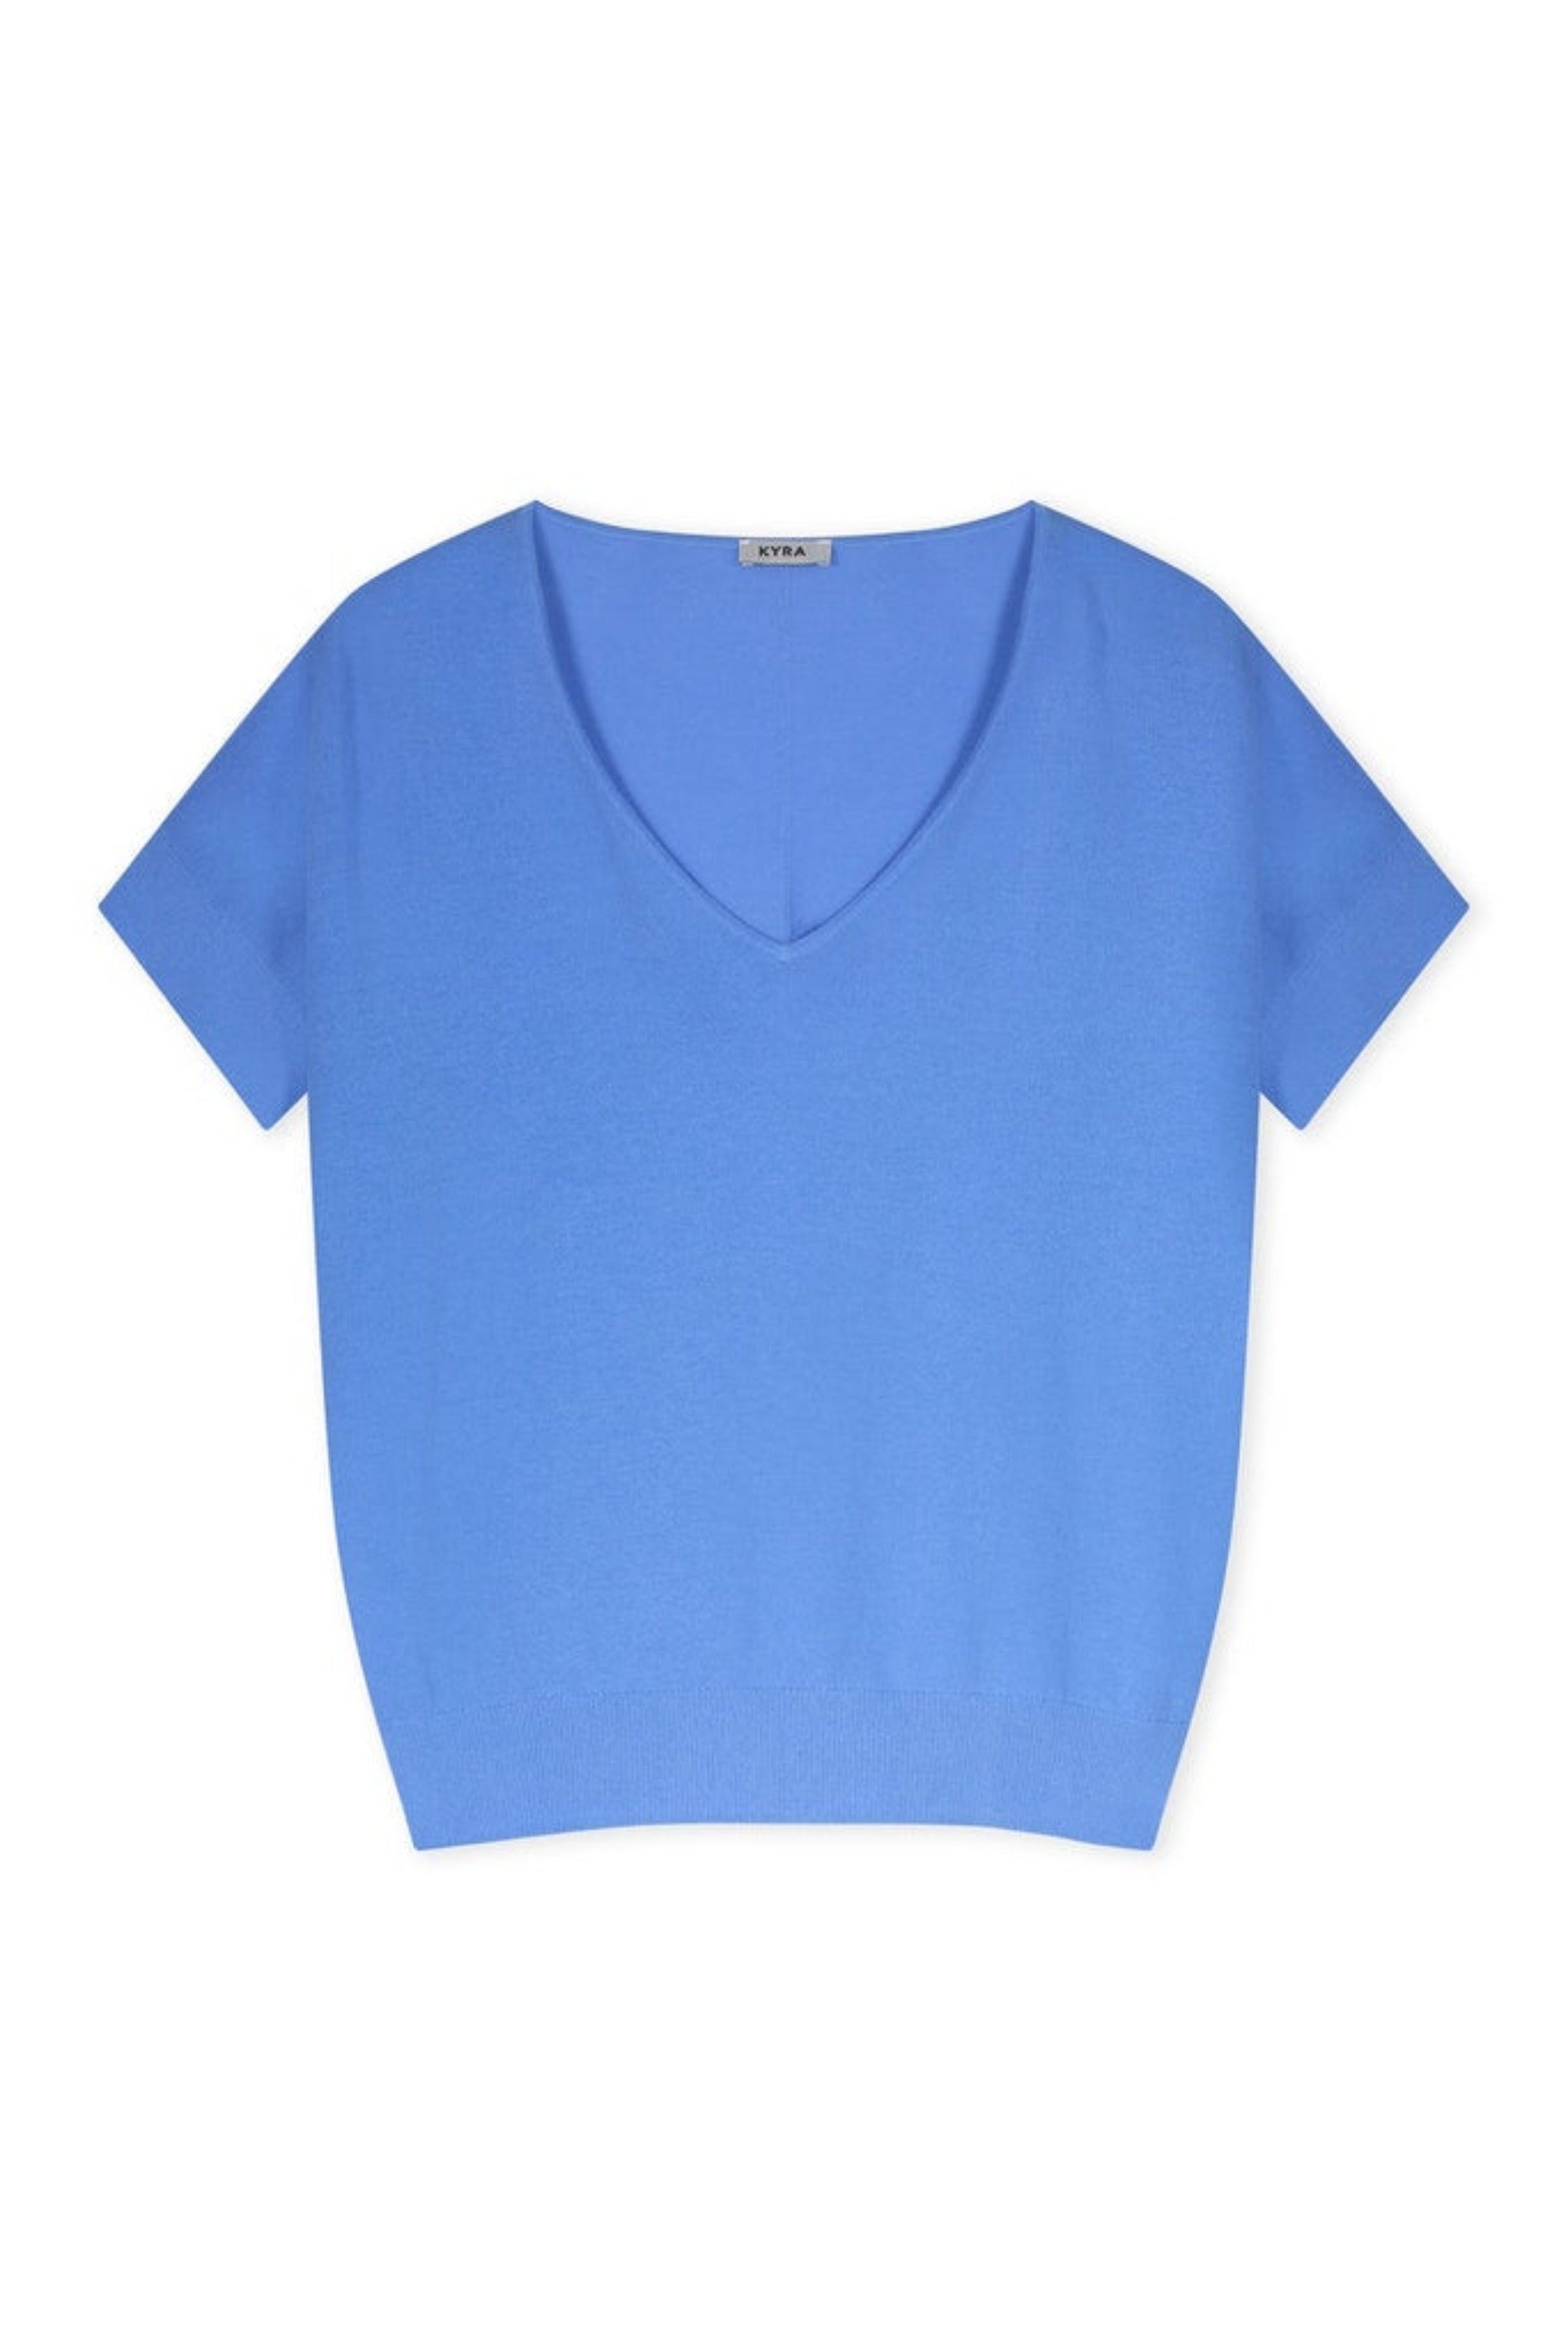 Avy Short Sleeve Sweater - Forever Blue